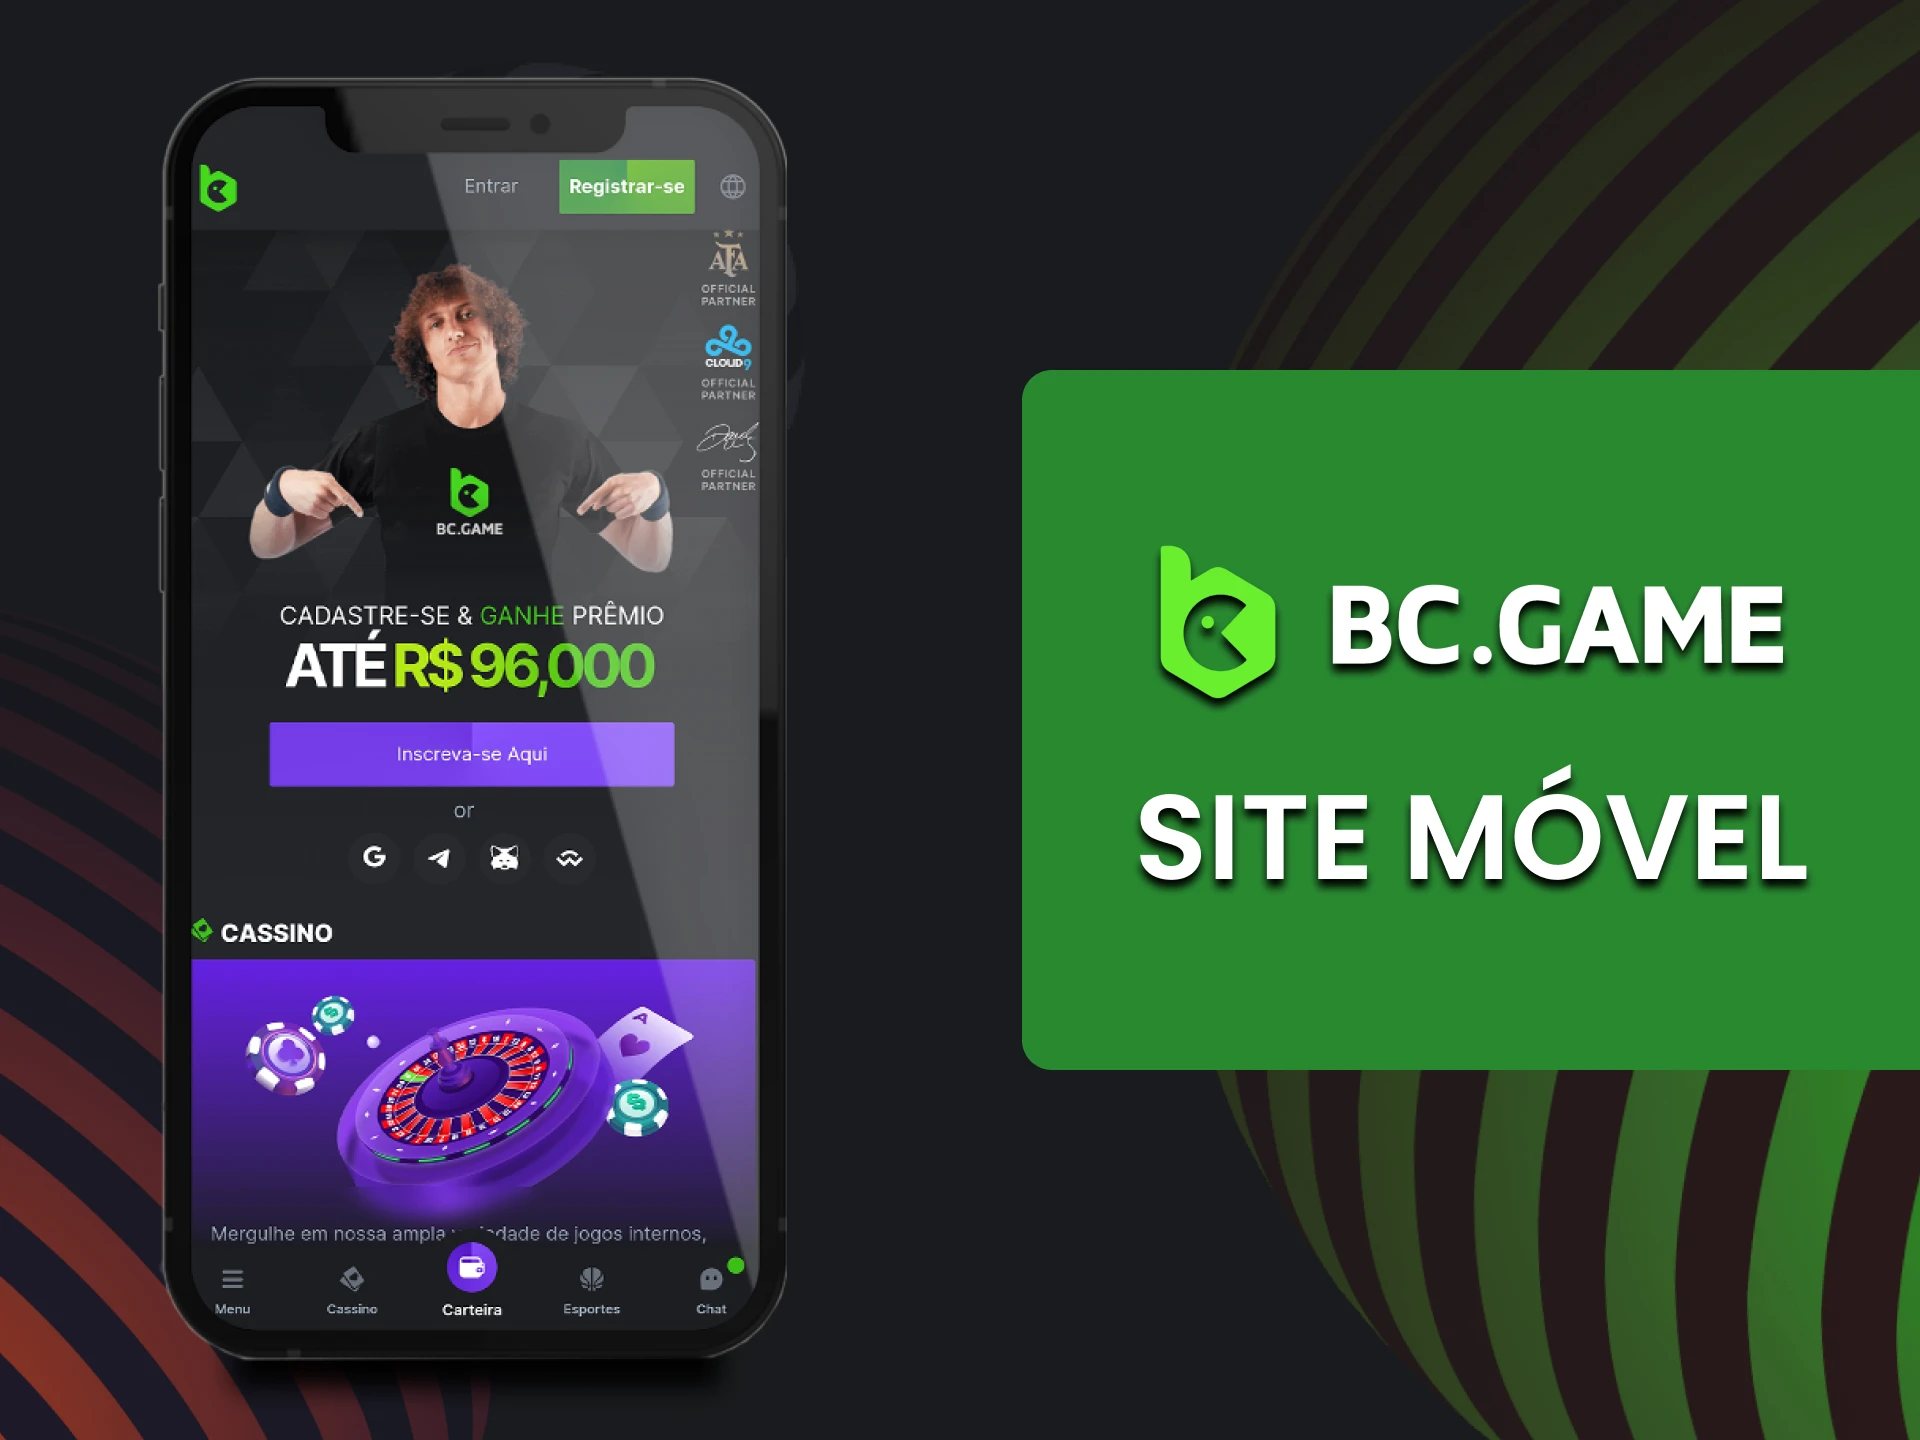 Visite a página BC Game através do seu telefone.